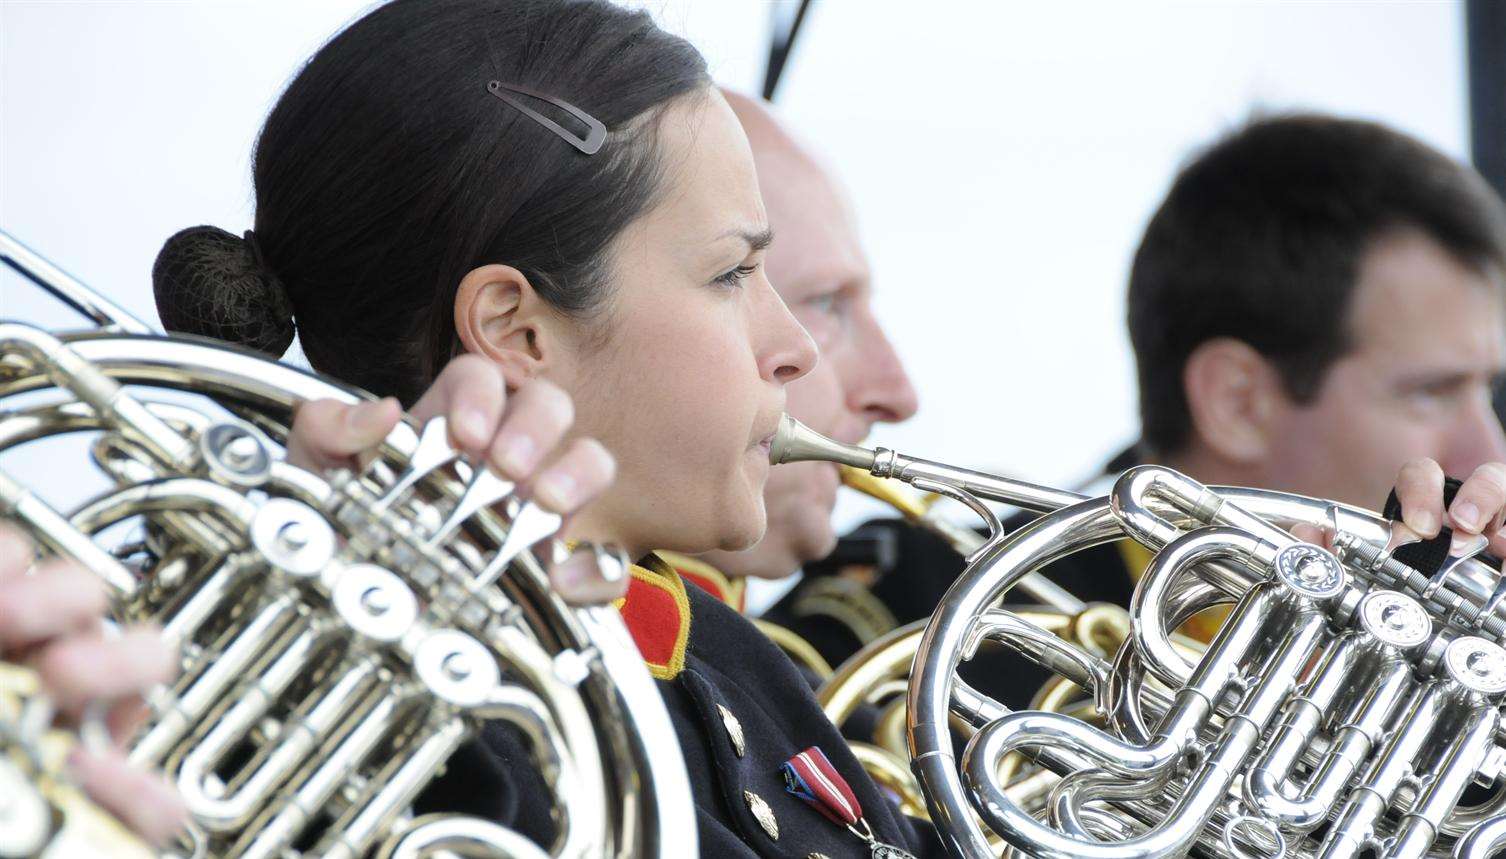 The Royal Marines band performing at Walmer bandstand